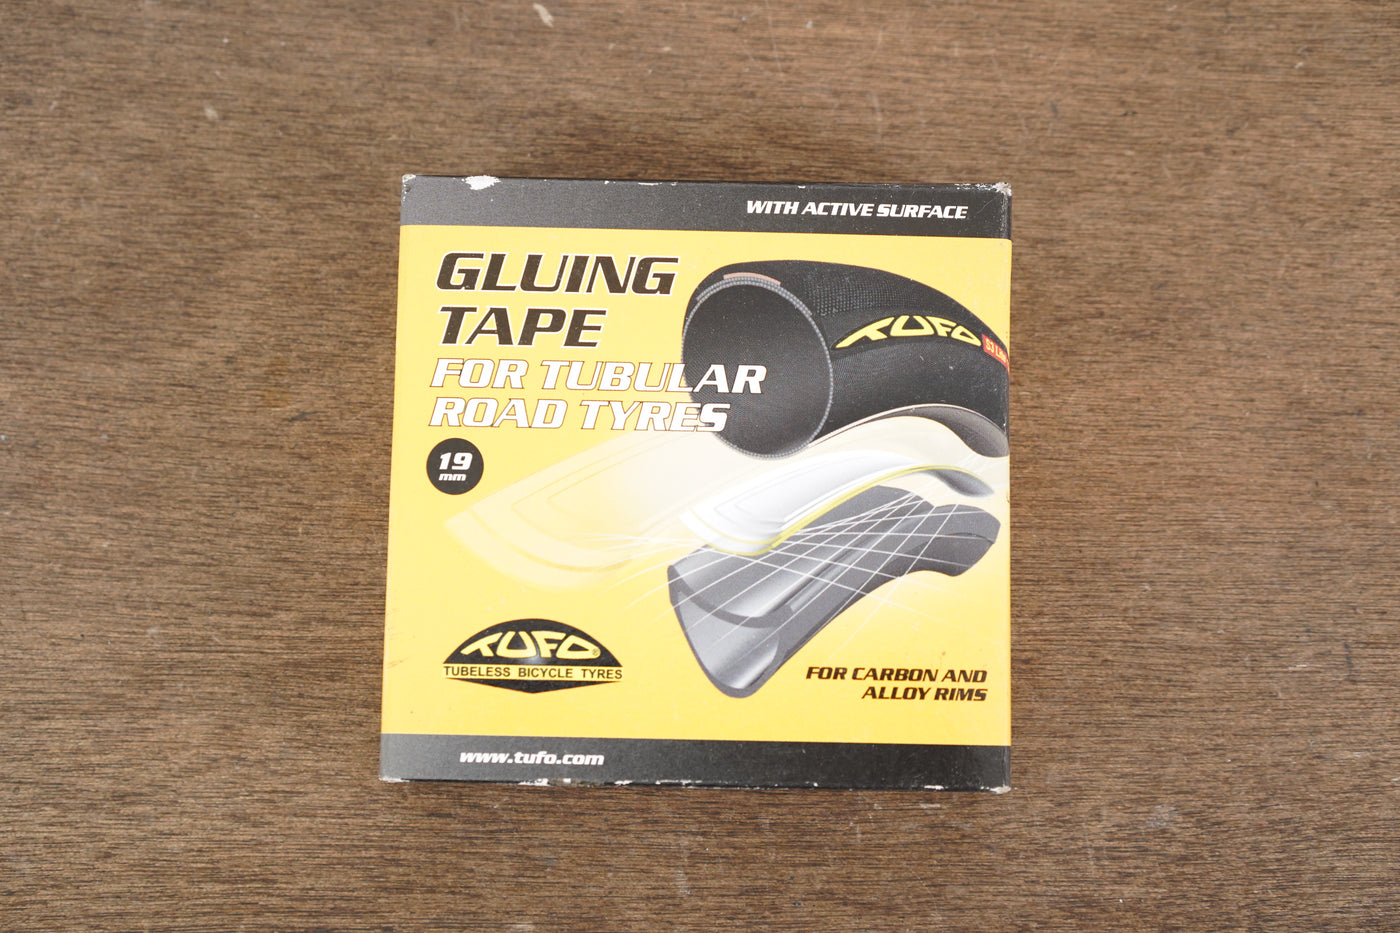 NEW 19mm Tufo Gluing Tape Tubular Road Tires